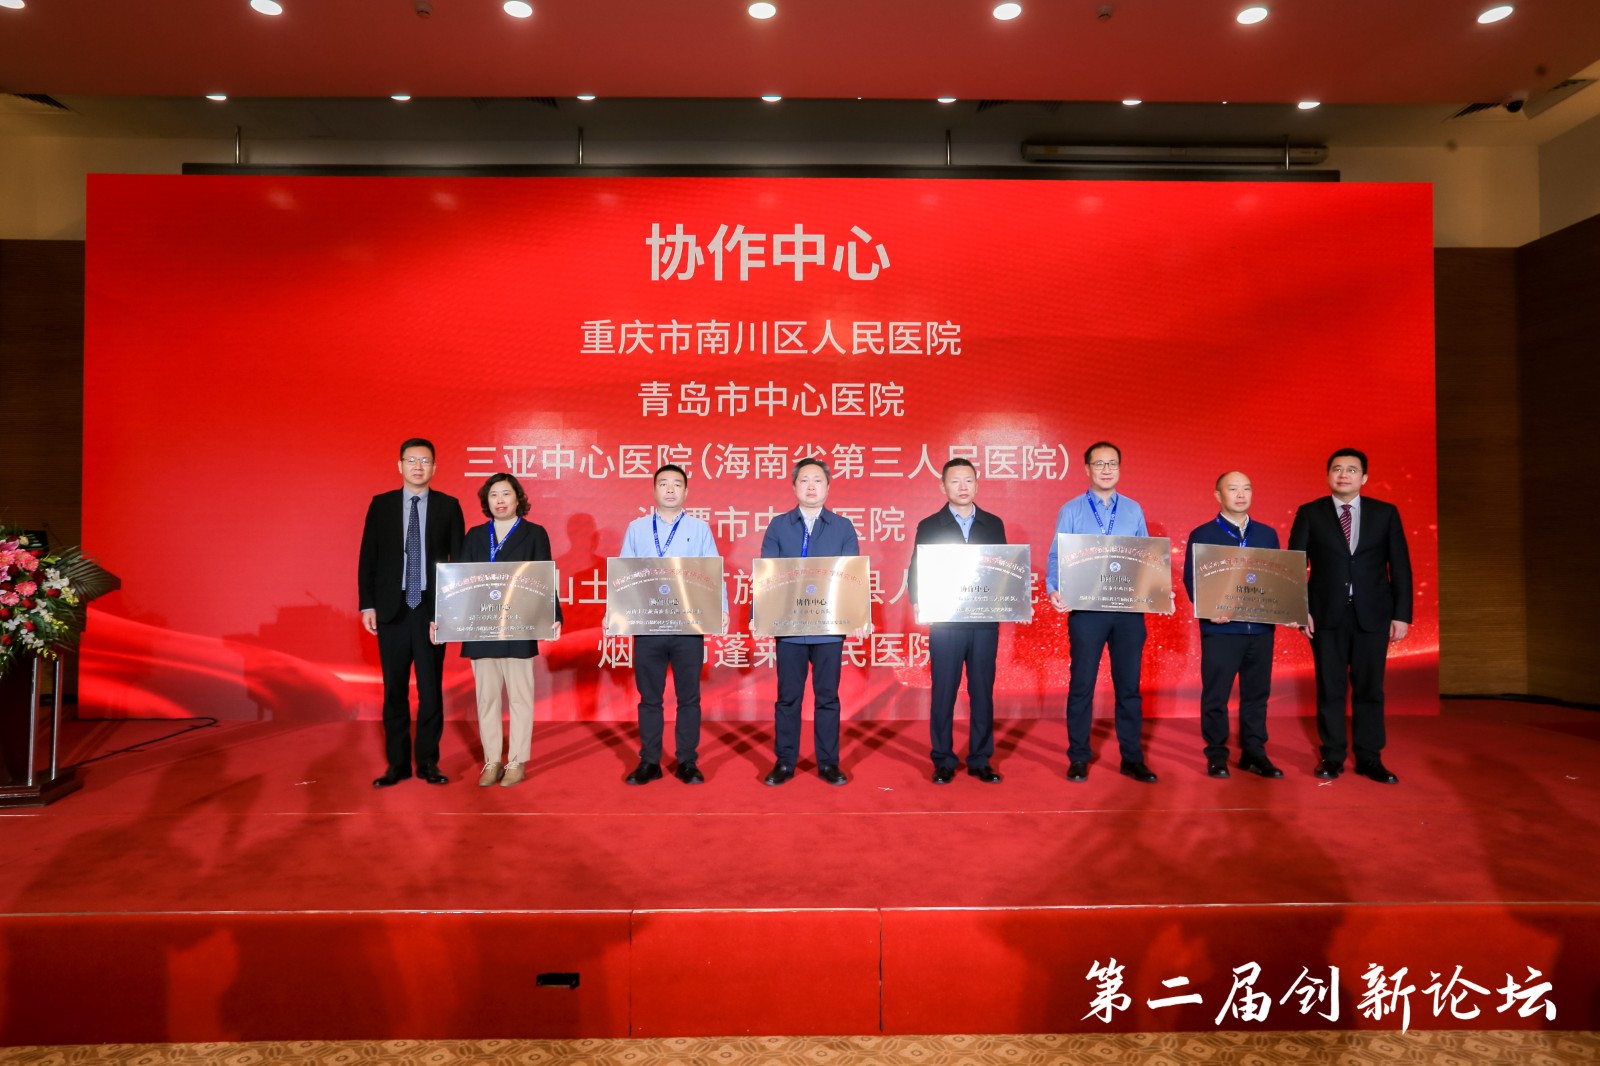 医院党委副书记、院长王天松（右四）代表医院接受牌匾。图片来源于北京安贞医院微信公众号.jpg